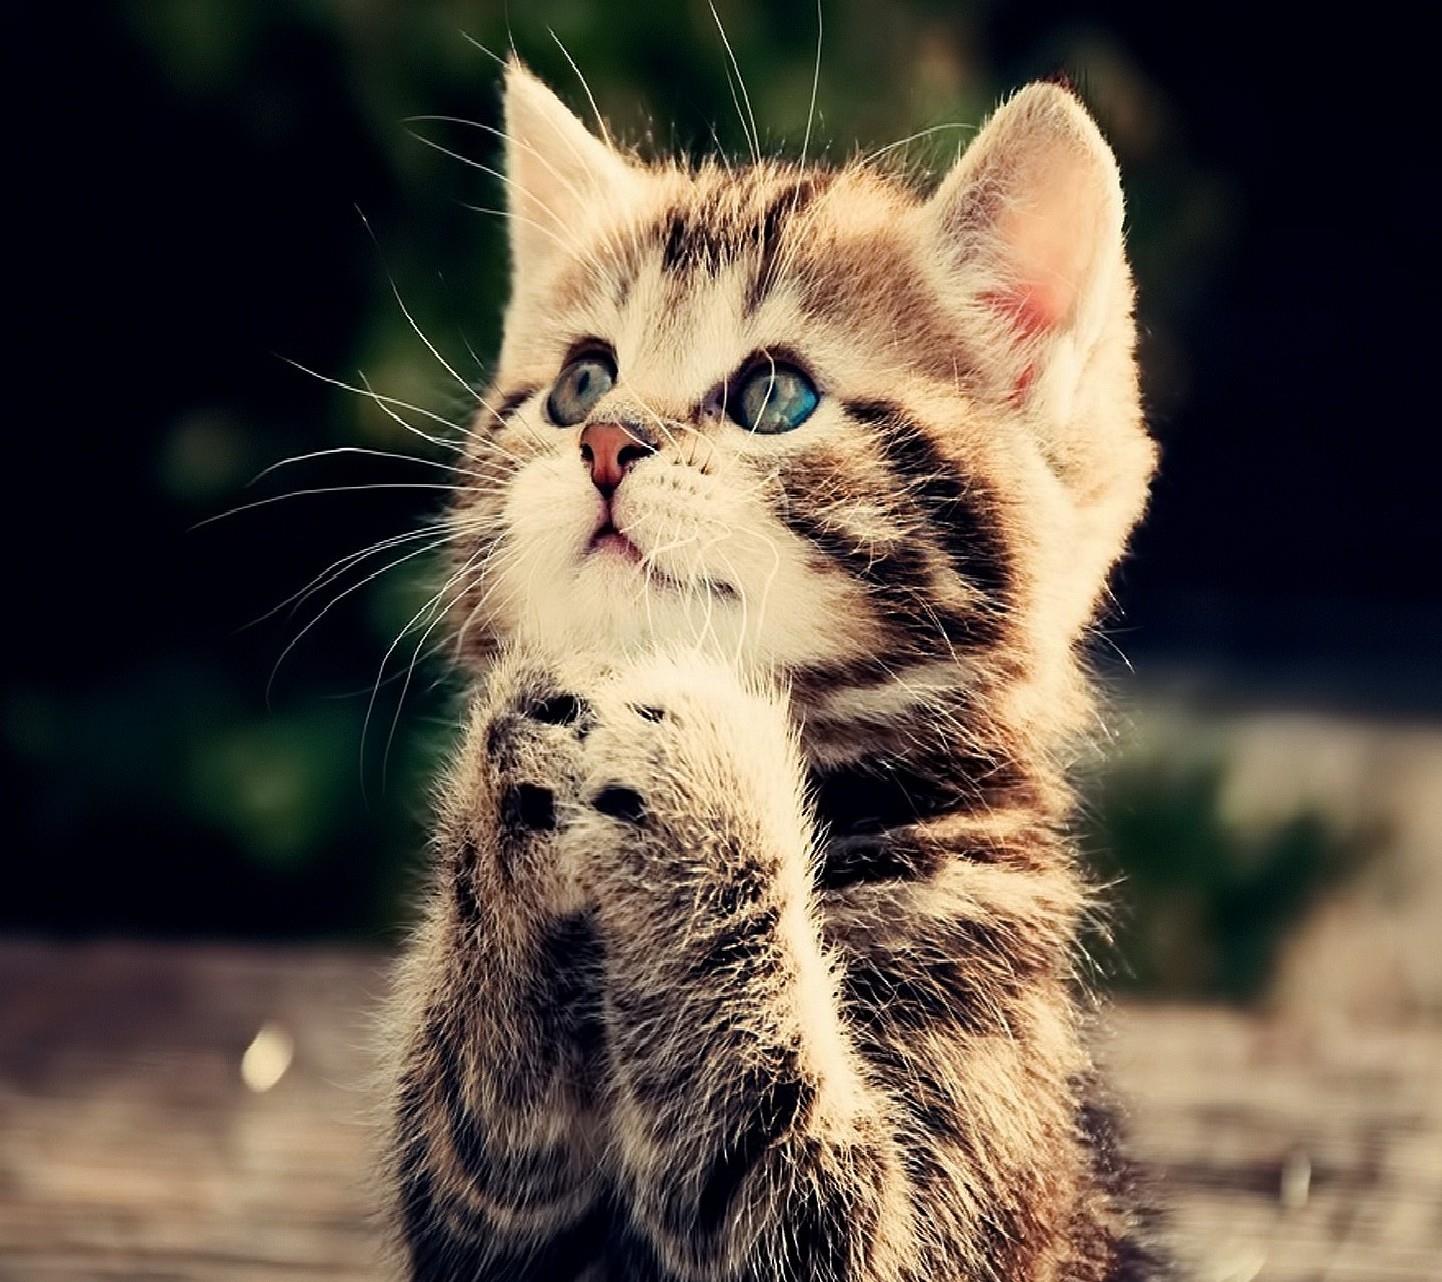 Un gattino che sembra pregare - Sfondi per Android, i più belli da scaricare gratis